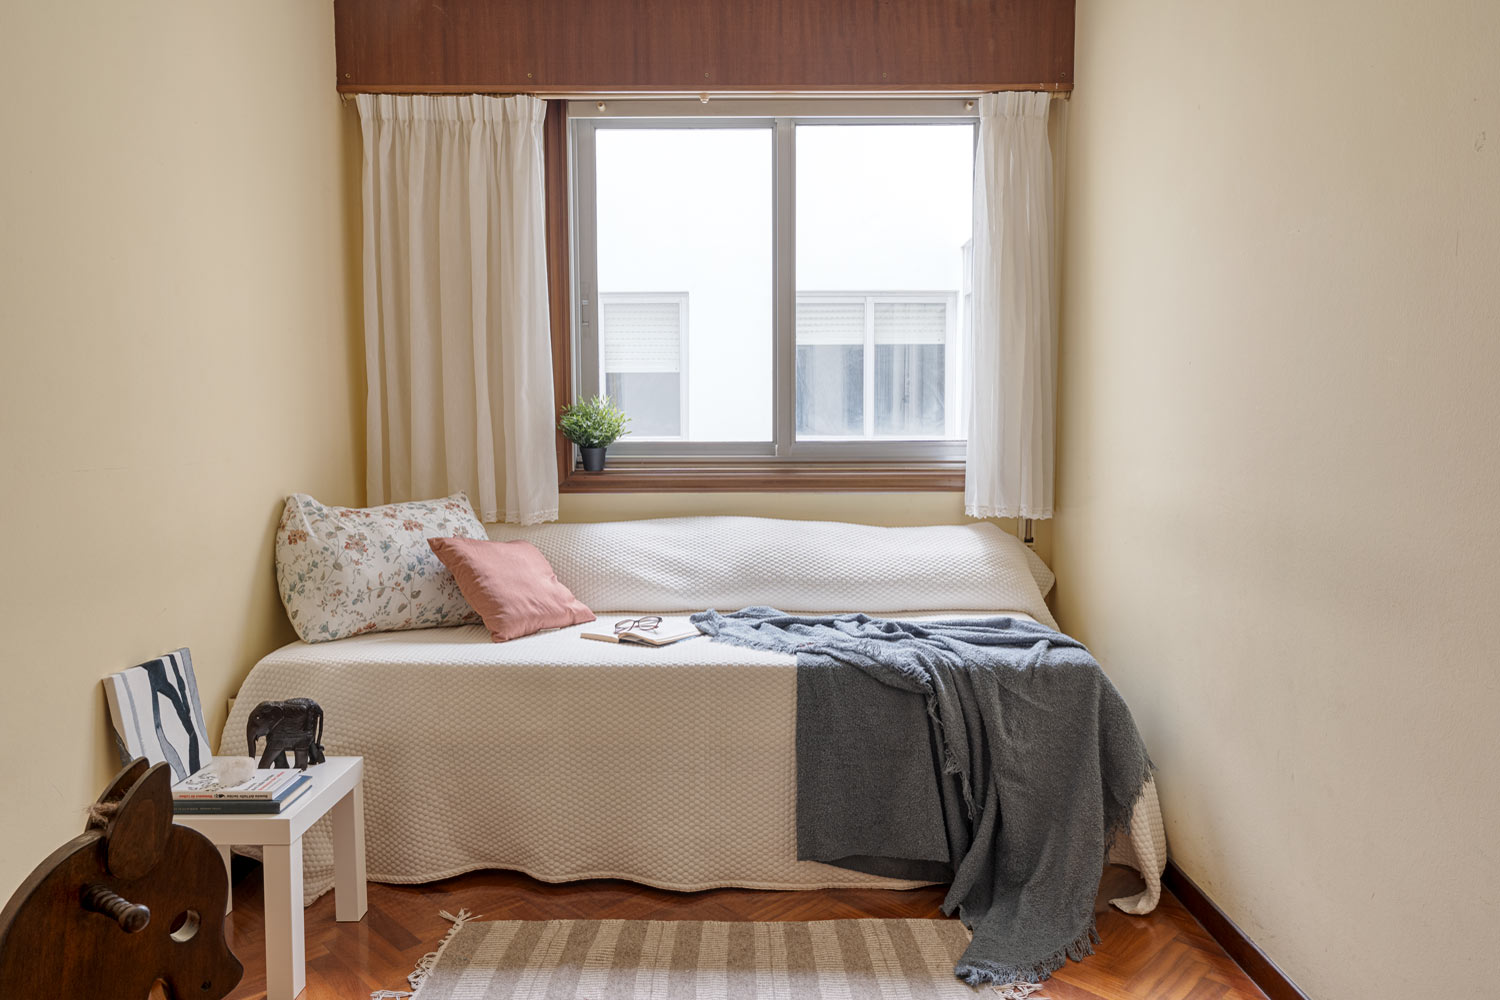 Habitación sencilla con cama individual, ventana grande y decoración minimalista